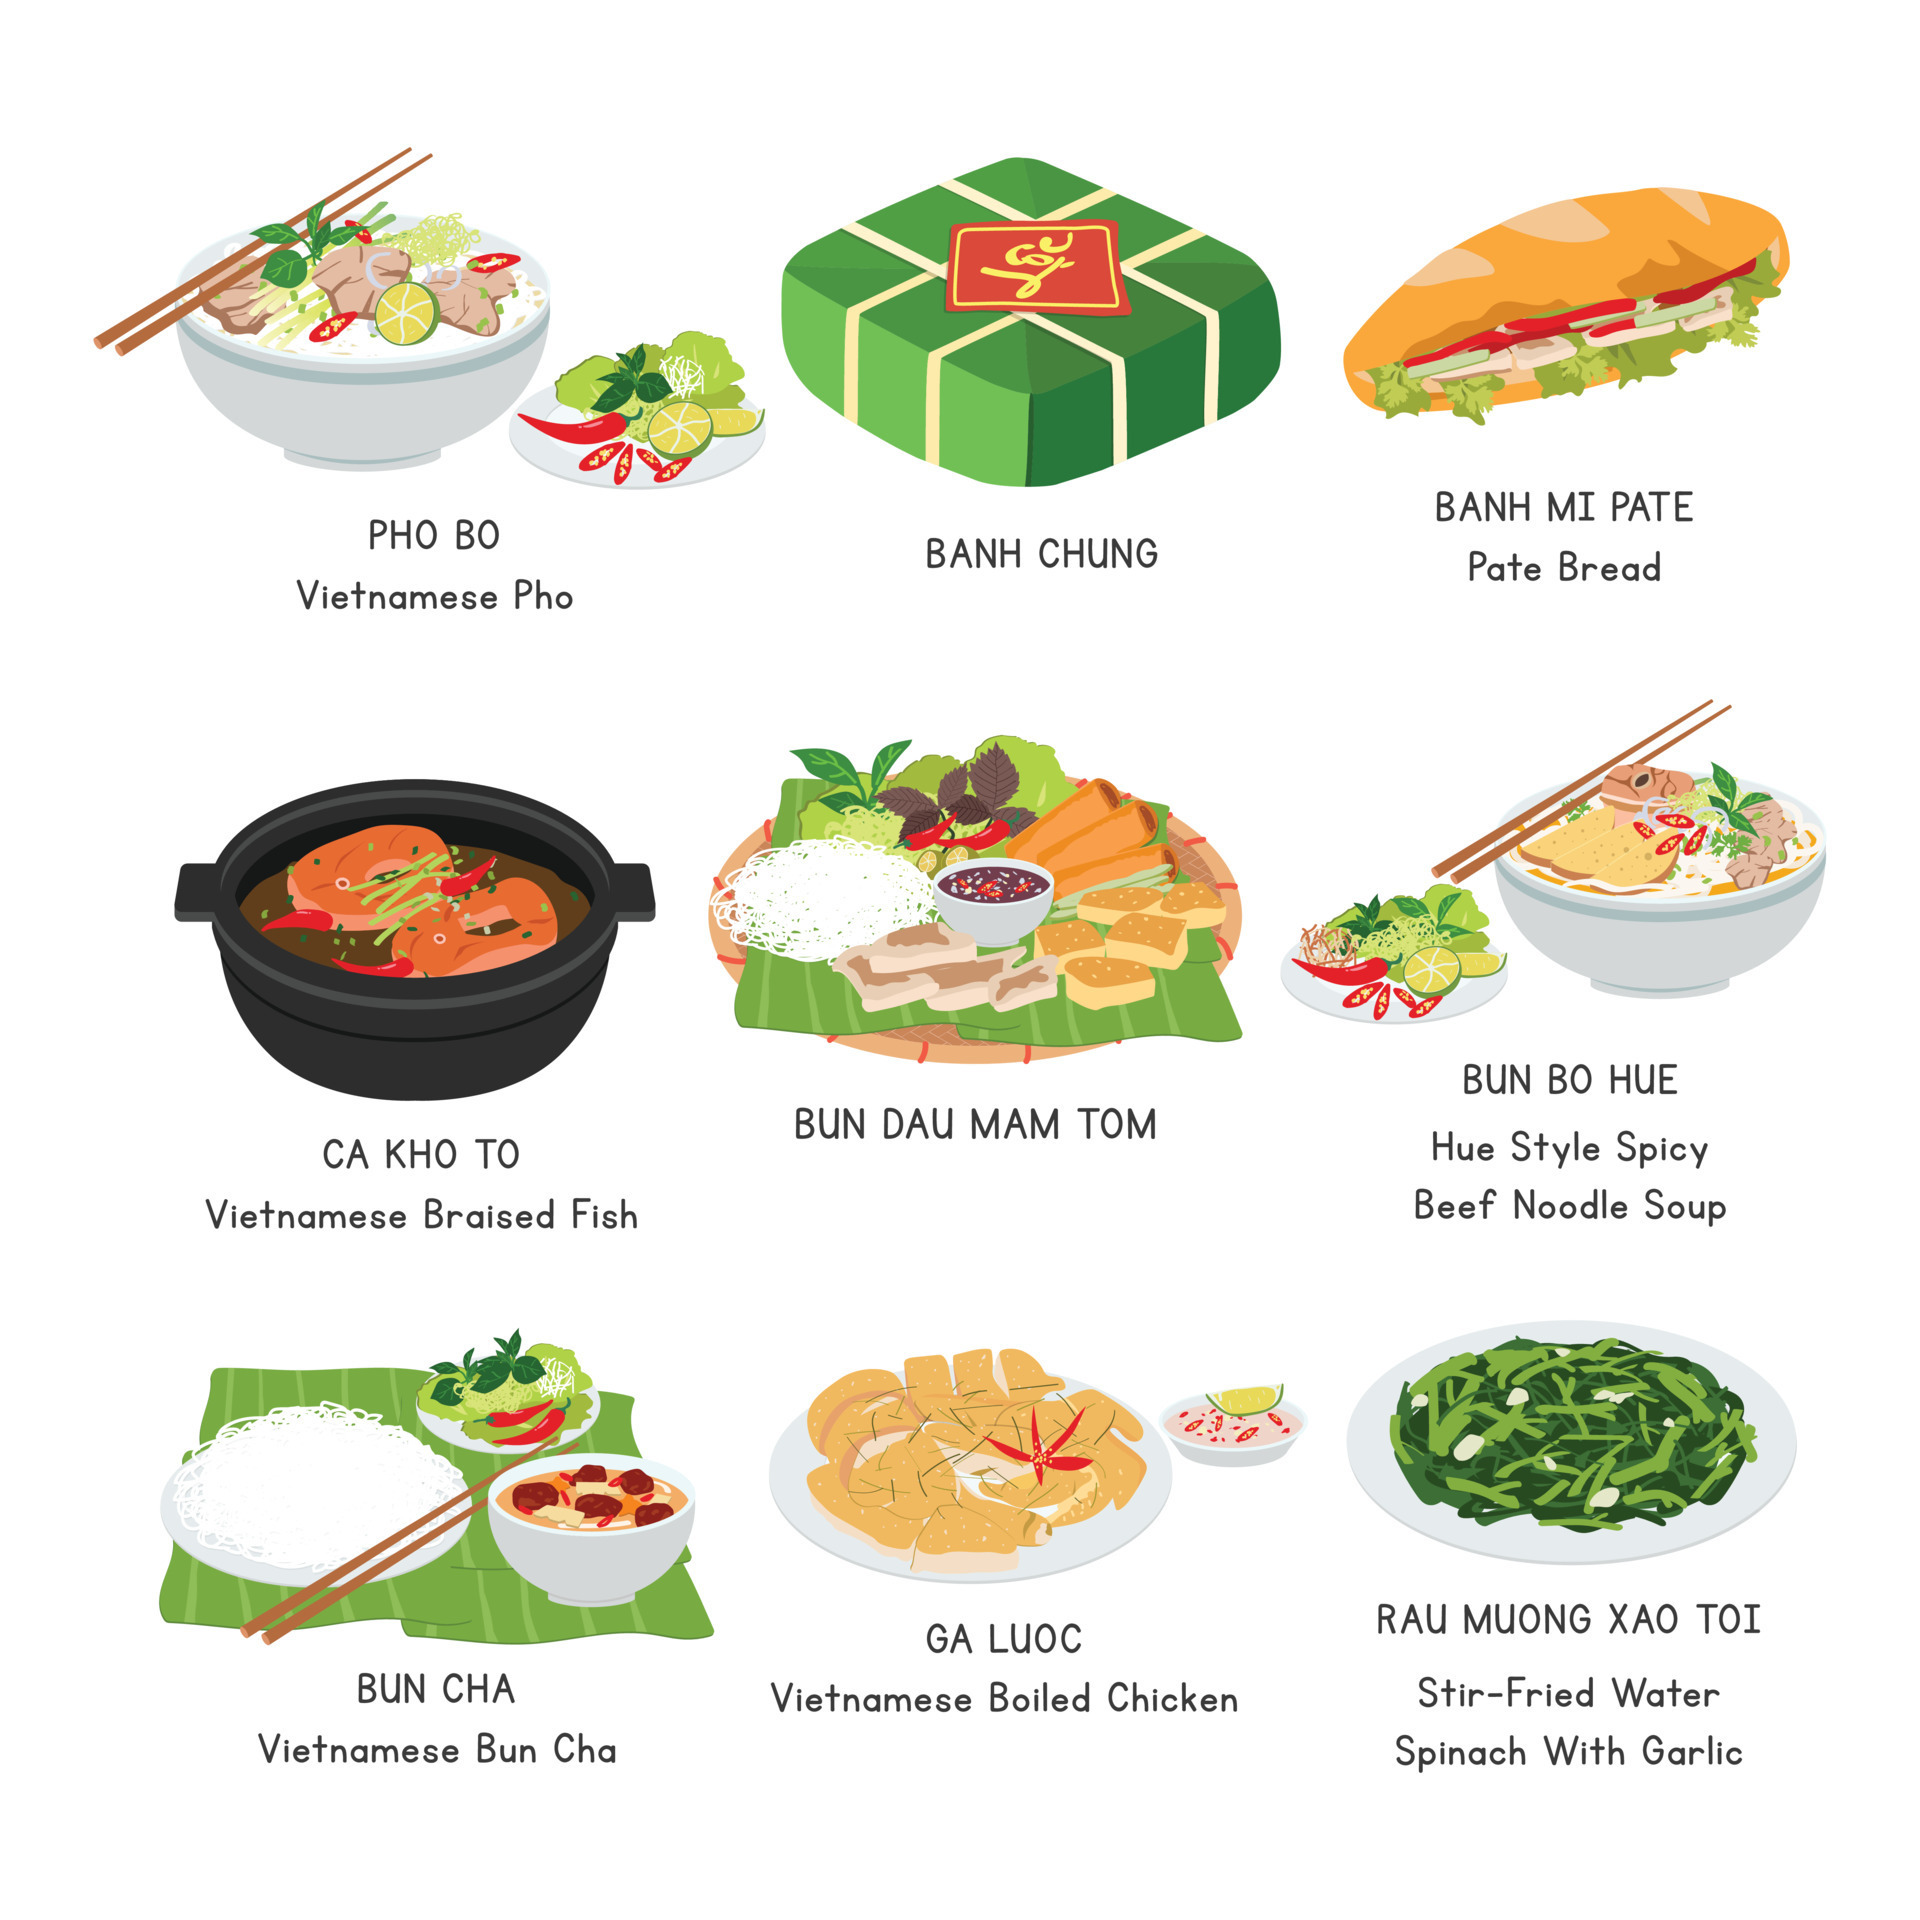 Khám phá ẩm thực Việt Nam qua những từ vựng tiếng Anh đơn giản, dễ hiểu